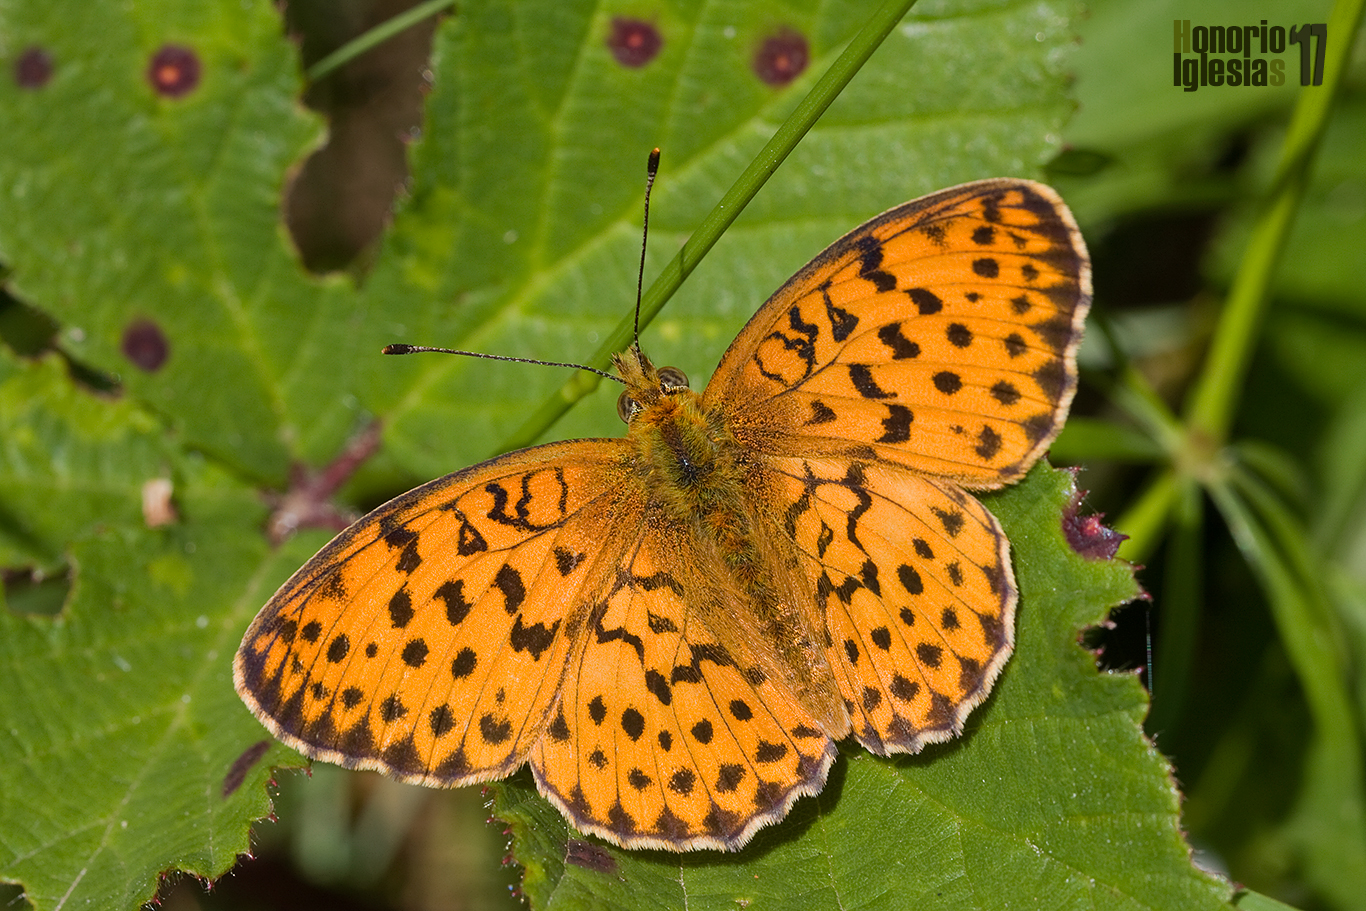 Ejemplar de mariposa bipunteada dafne o laurel (Brenthis daphne) mostrando su anverso alar. La peculiar forma redondeada de las alas anteriores ayuda en la identificación de la especie